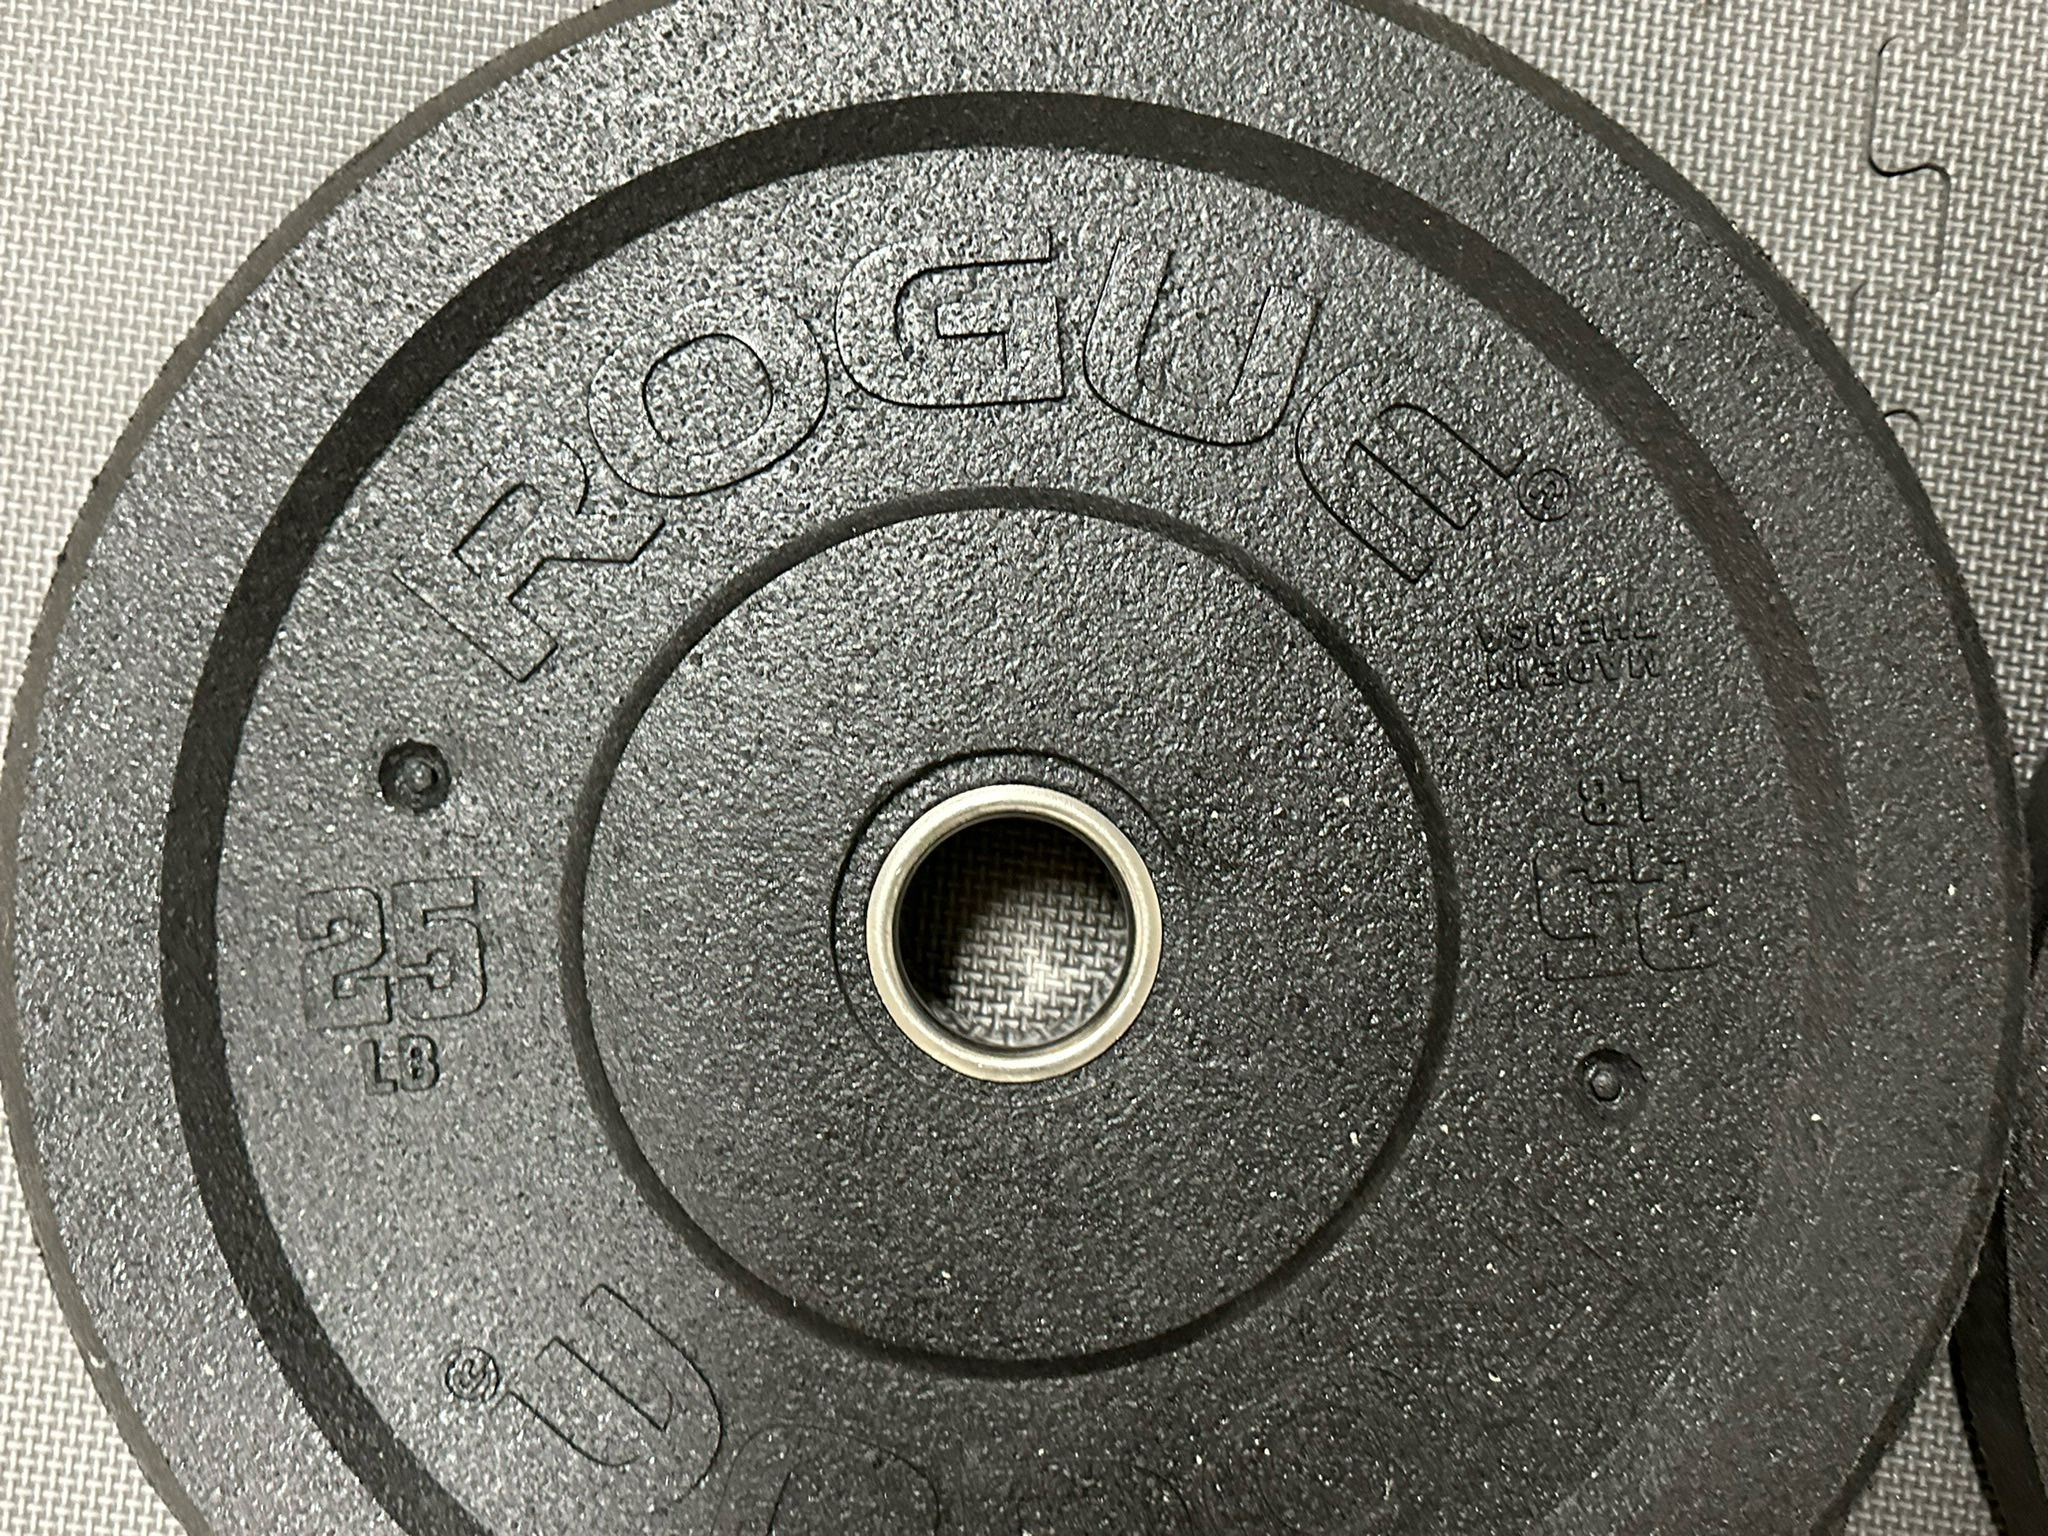 Rogue 25lb Plates